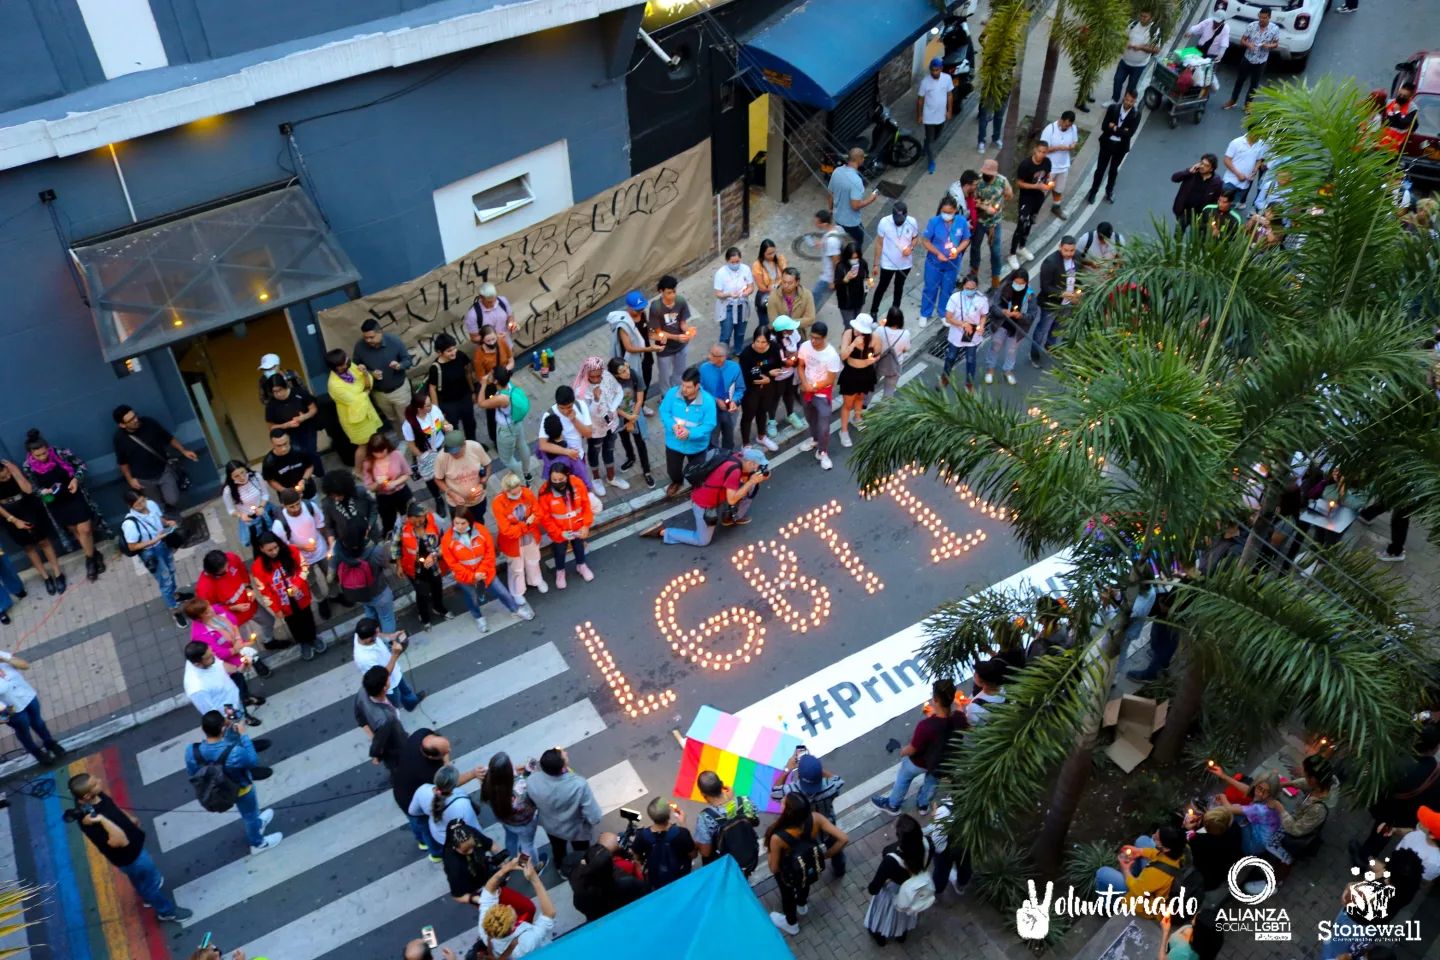 Sexualidad sometida: homicidios de hombres gay atemorizan a la segunda ciudad de Colombia